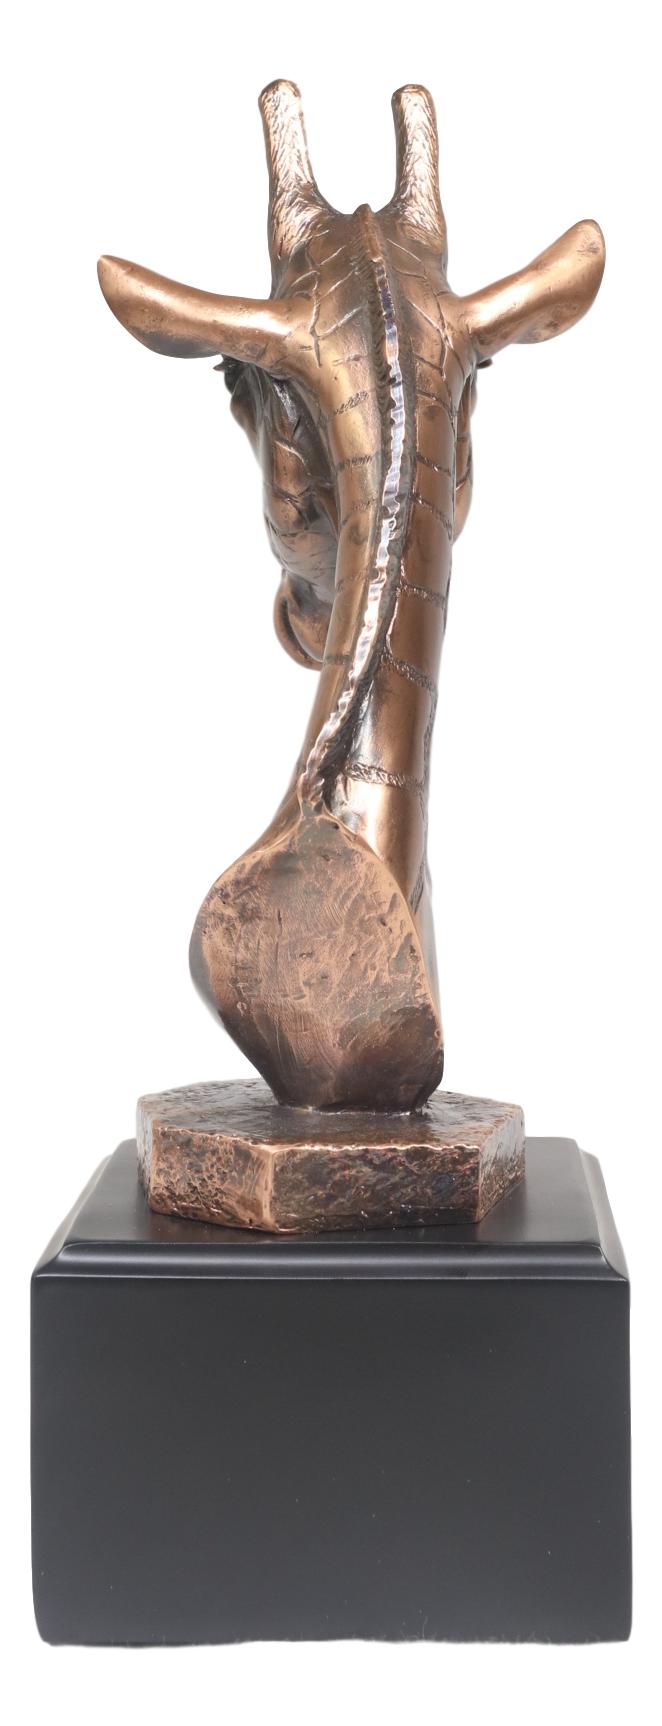 Wild Safari Giraffe Head Bust Electroplated Bronze Finish Statue With Base